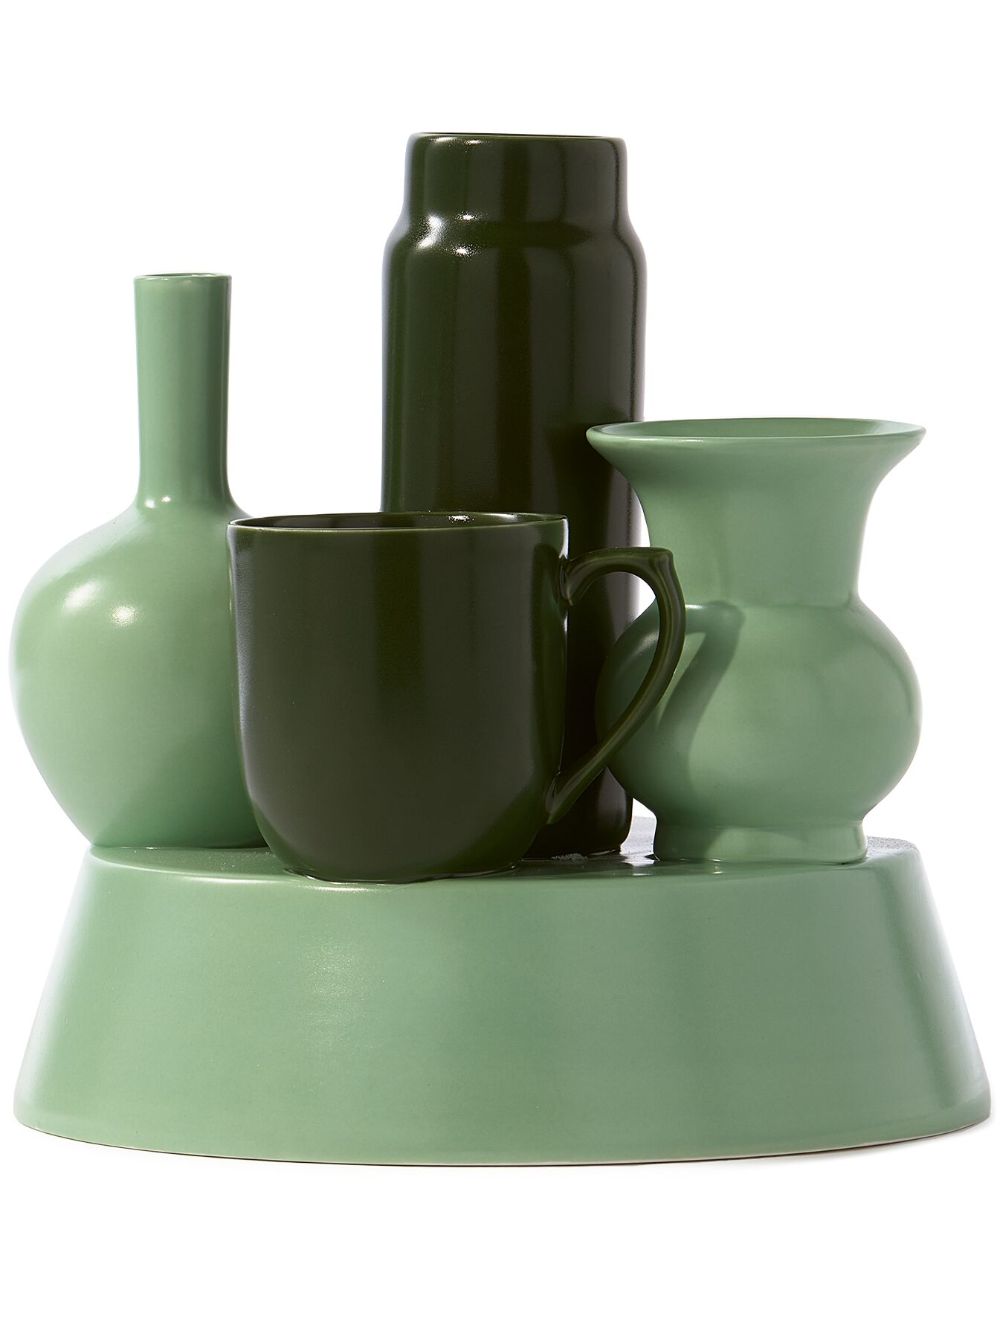 POLSPOTTEN Hong Kong porcelain vase (26cm x 25cm) - Green von POLSPOTTEN